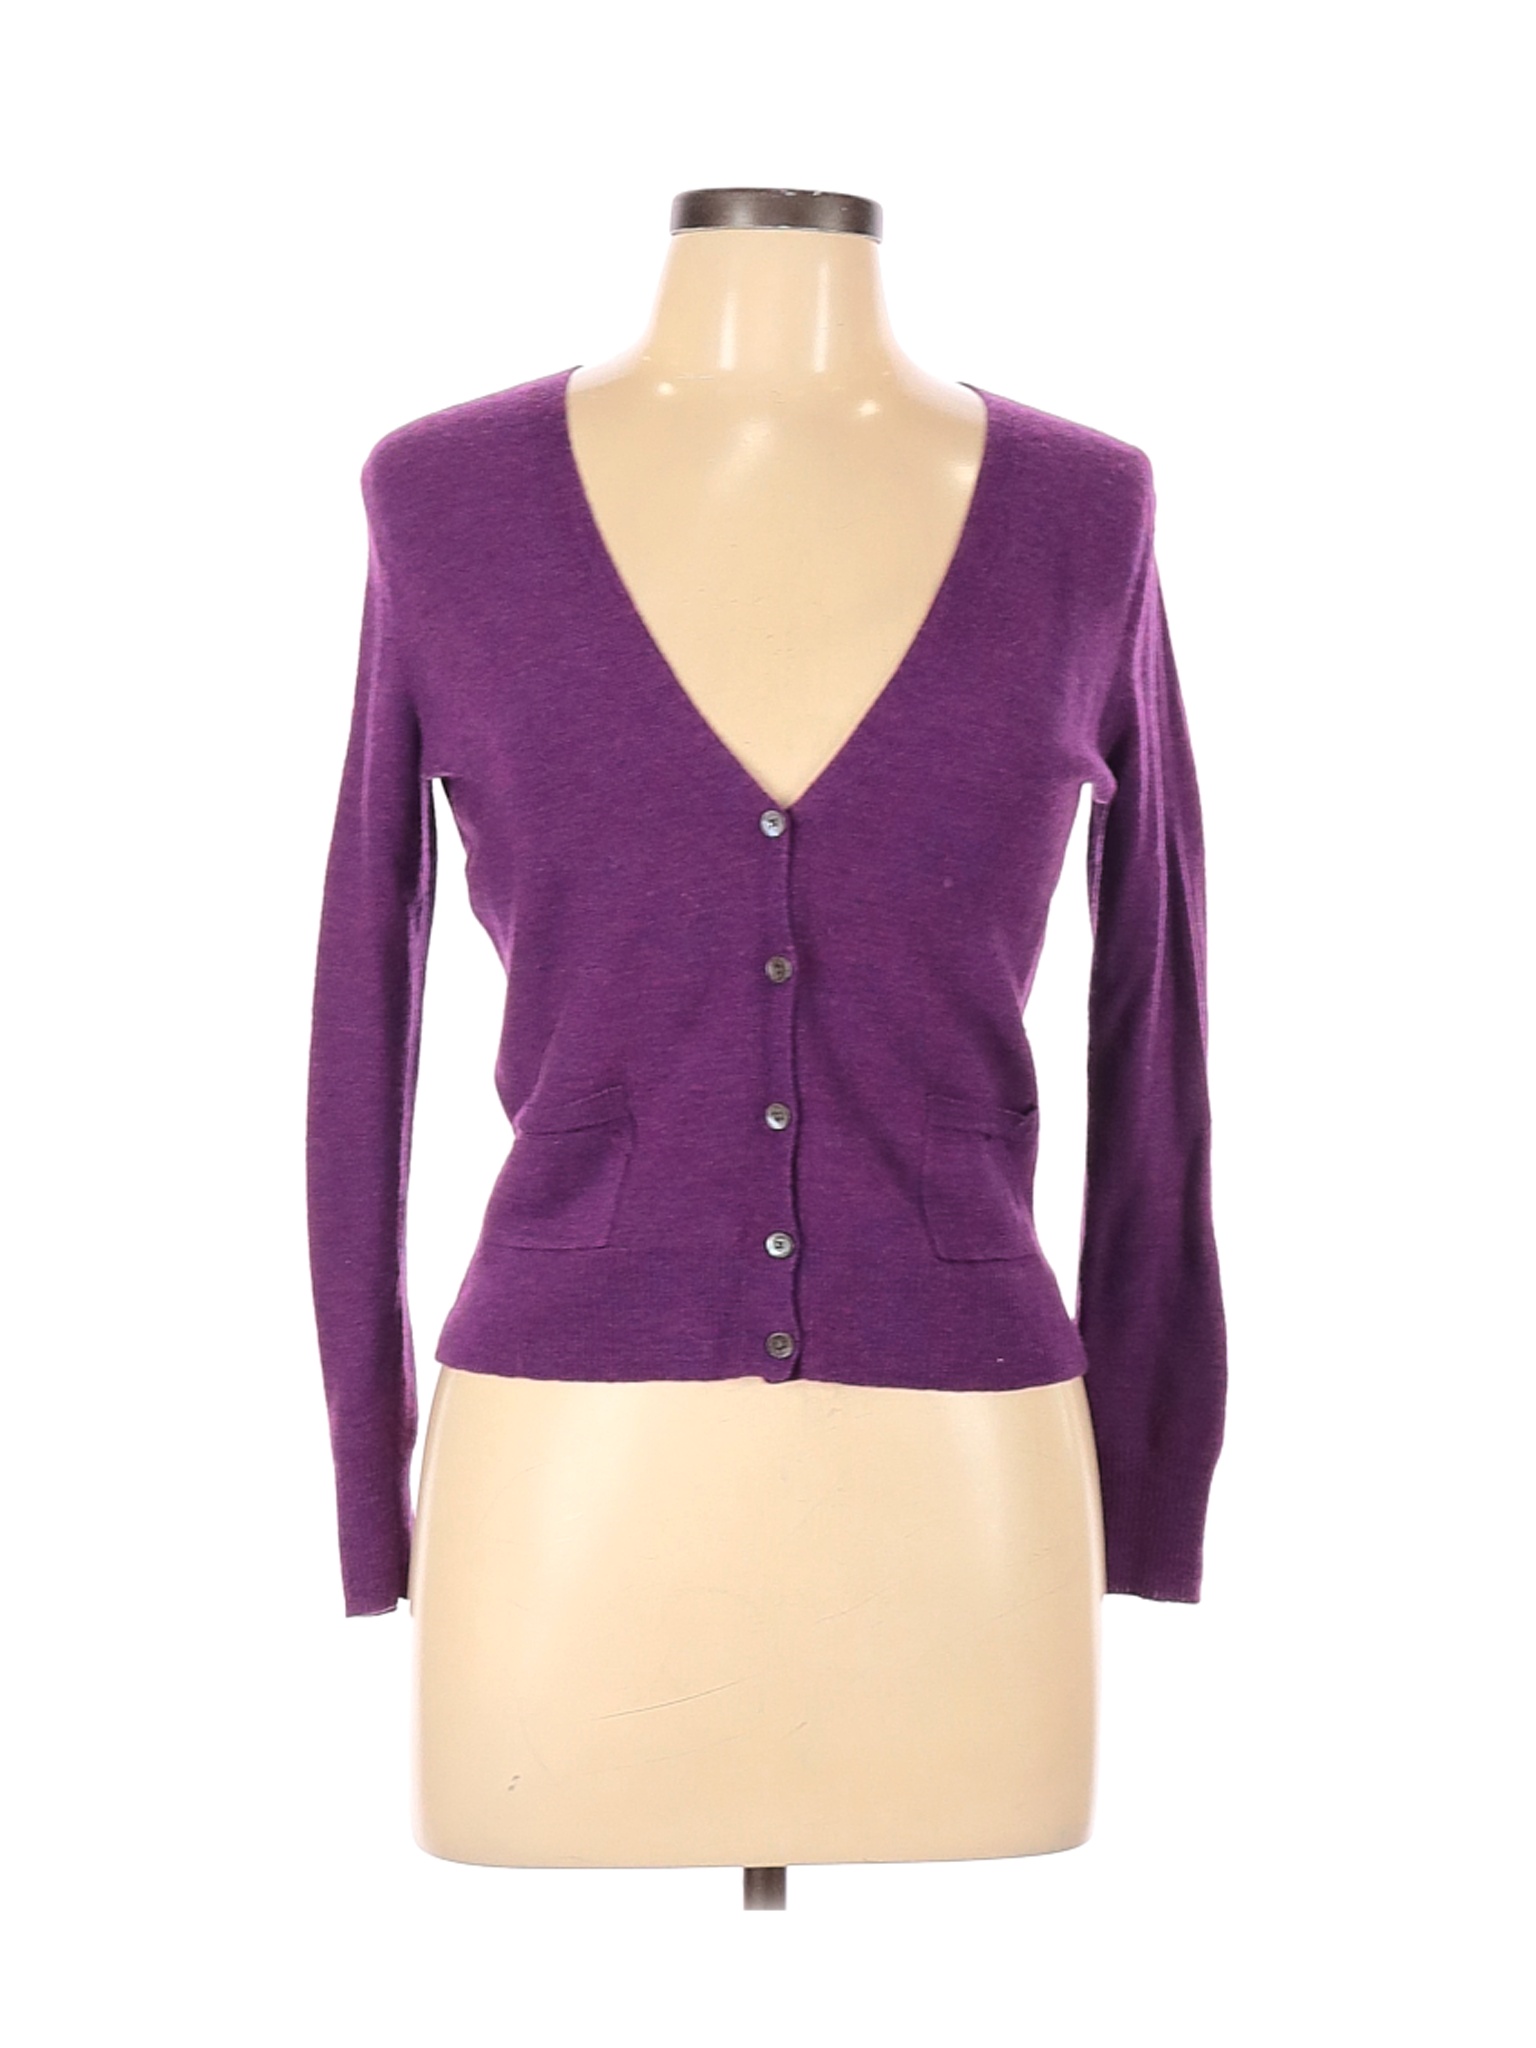 Eileen Fisher Women Purple Cardigan M | eBay